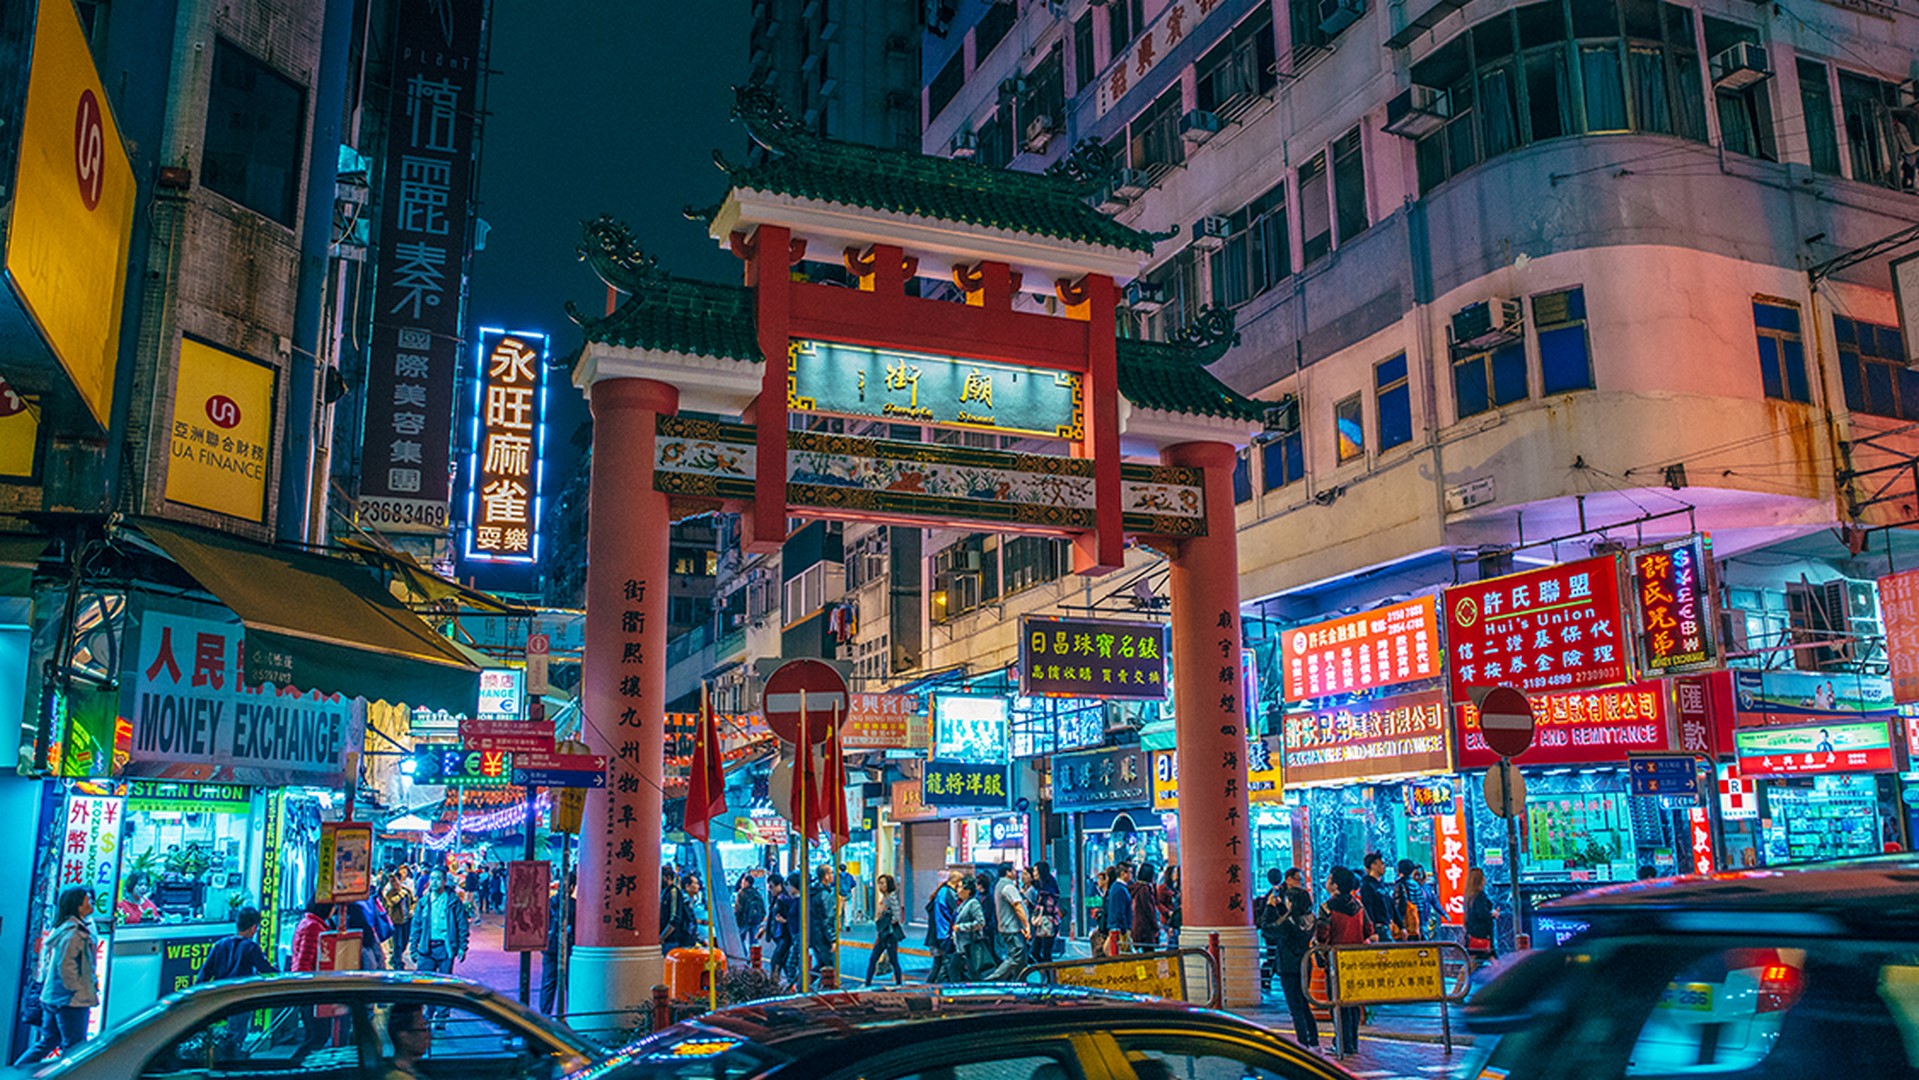 Yau Tsim Mong Hong Kong Tourism Board